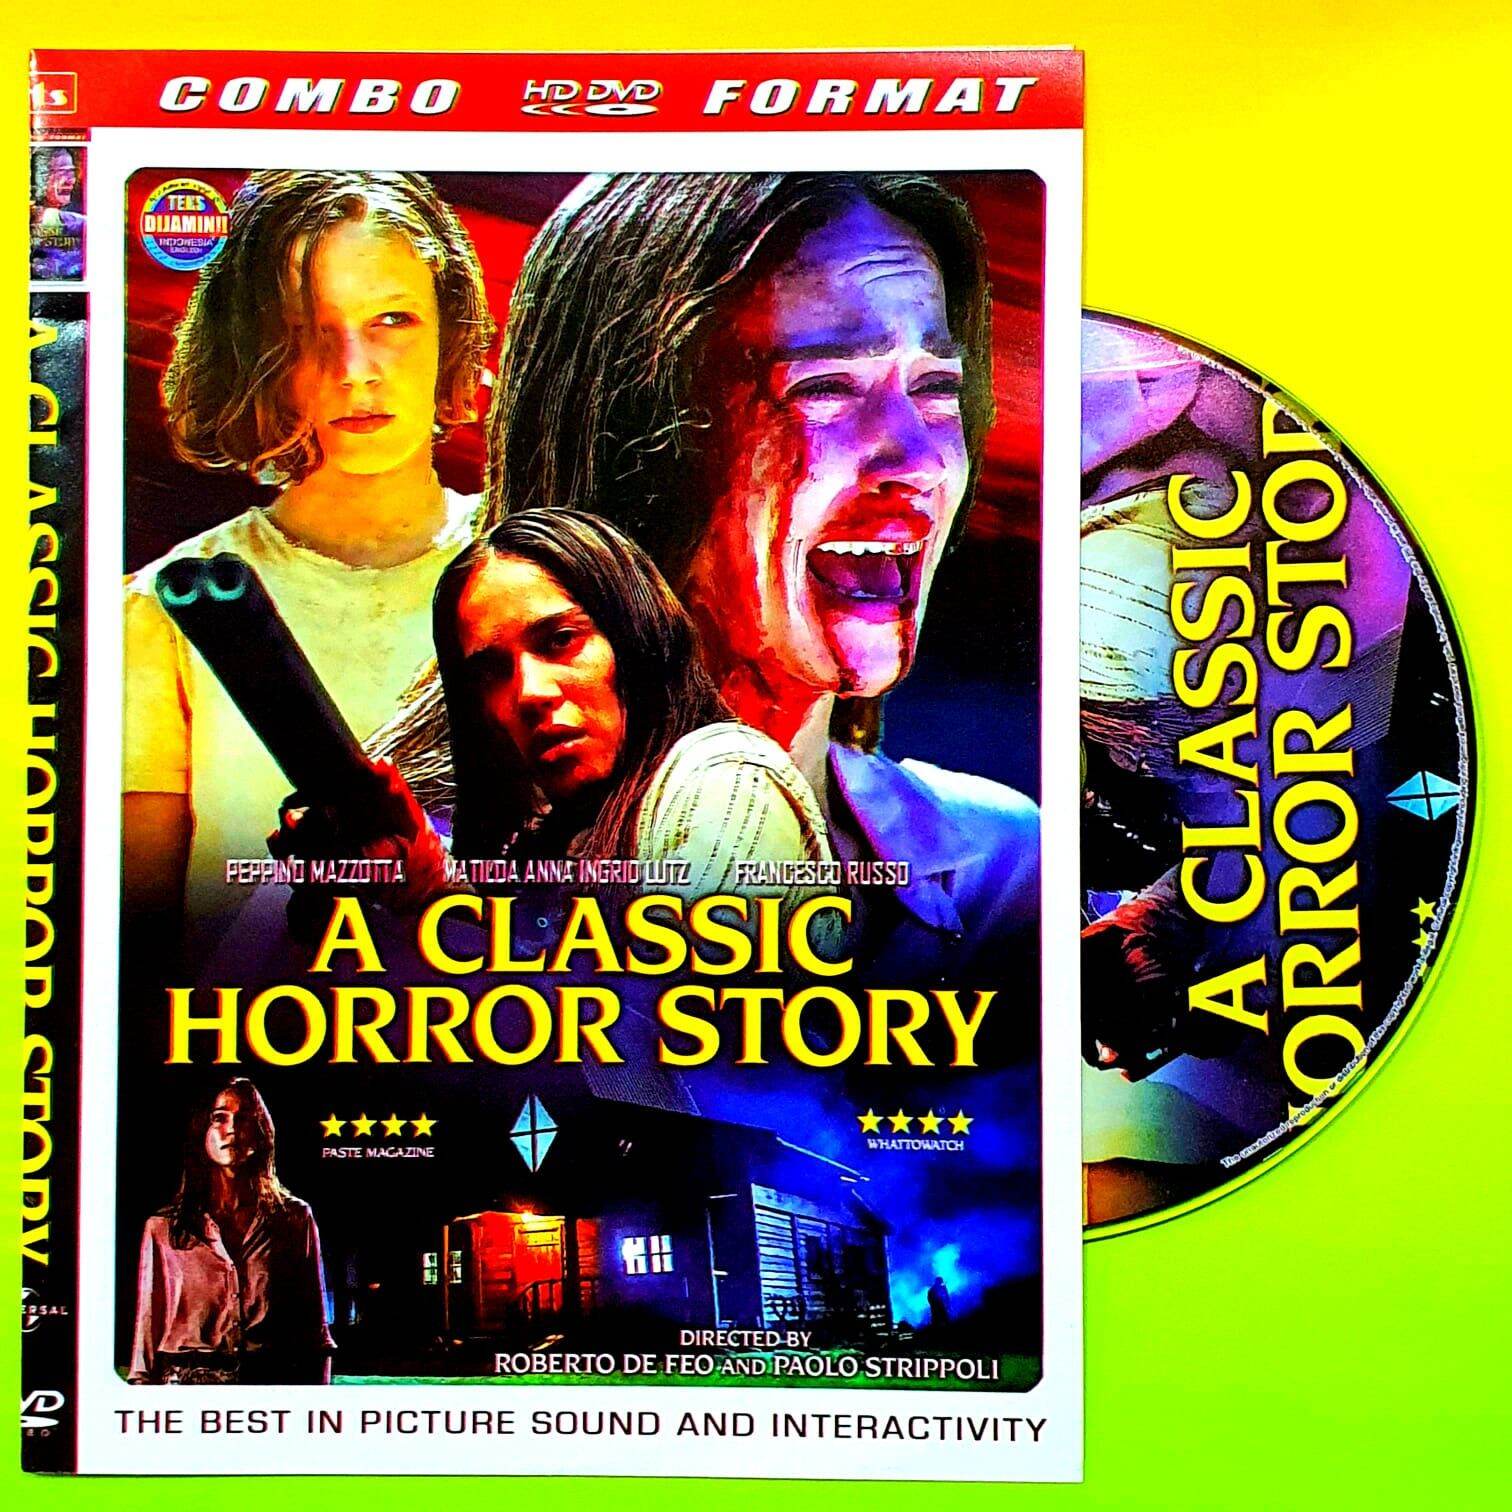 Kaset Dvd Film A Classic Horror Story Film Horor Thriller Terbaru Film Horor Pembunuhan Terbaru 